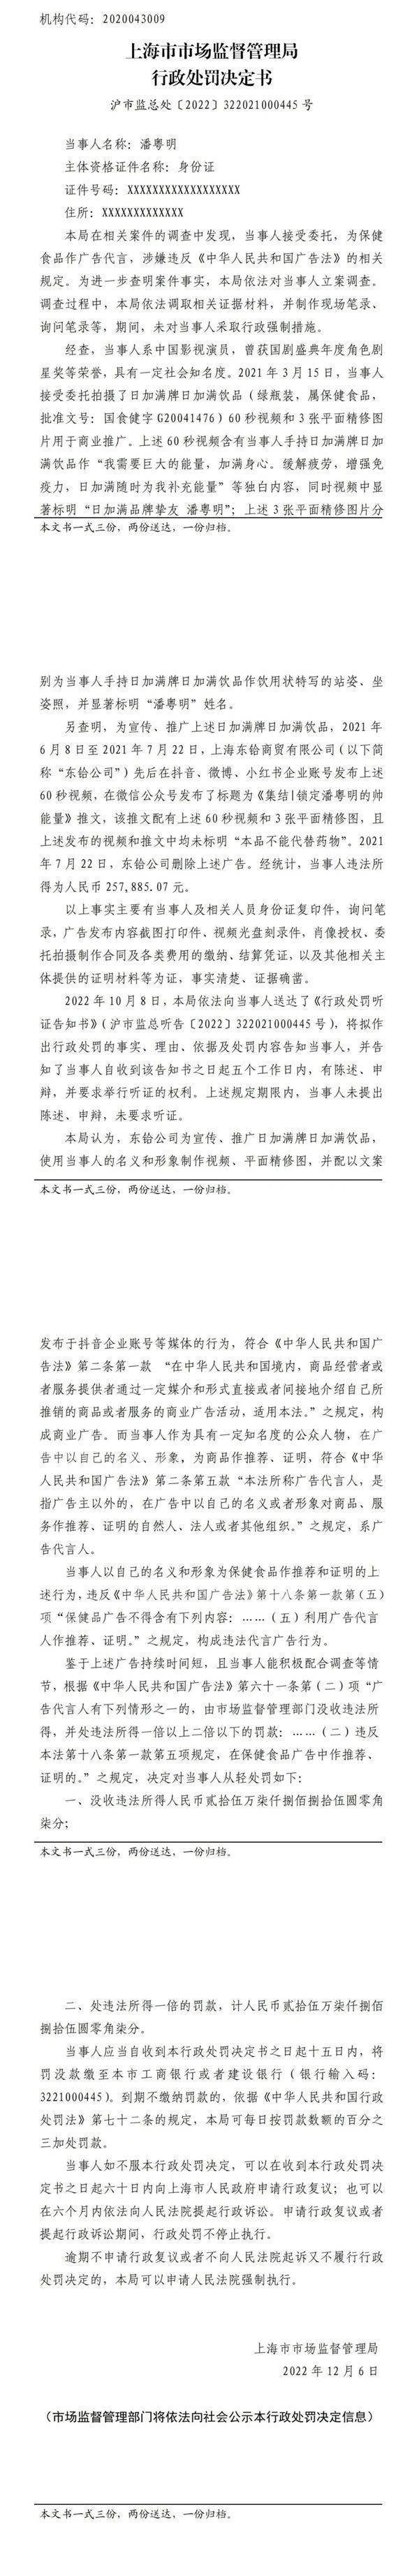 代言违法保健品广告：知名演员潘粤明被罚25万元